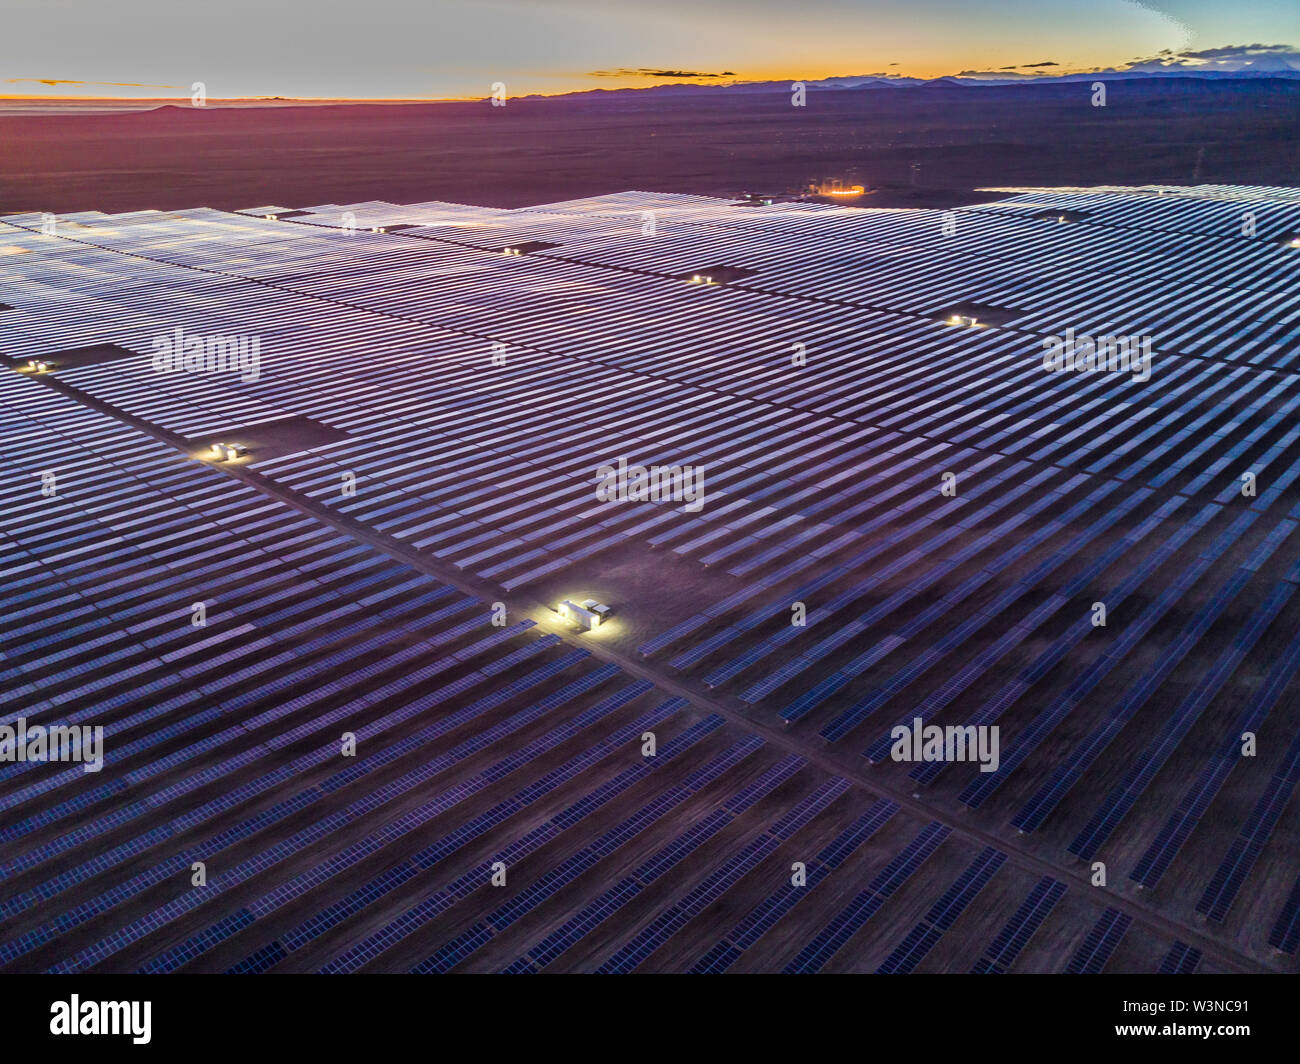 Vue aérienne de centaines de modules d'énergie solaire ou panneaux rangées le long des terres arides au désert d'Atacama, au Chili. Installation photovoltaïque photovoltaïque énorme dans une scène arides Banque D'Images